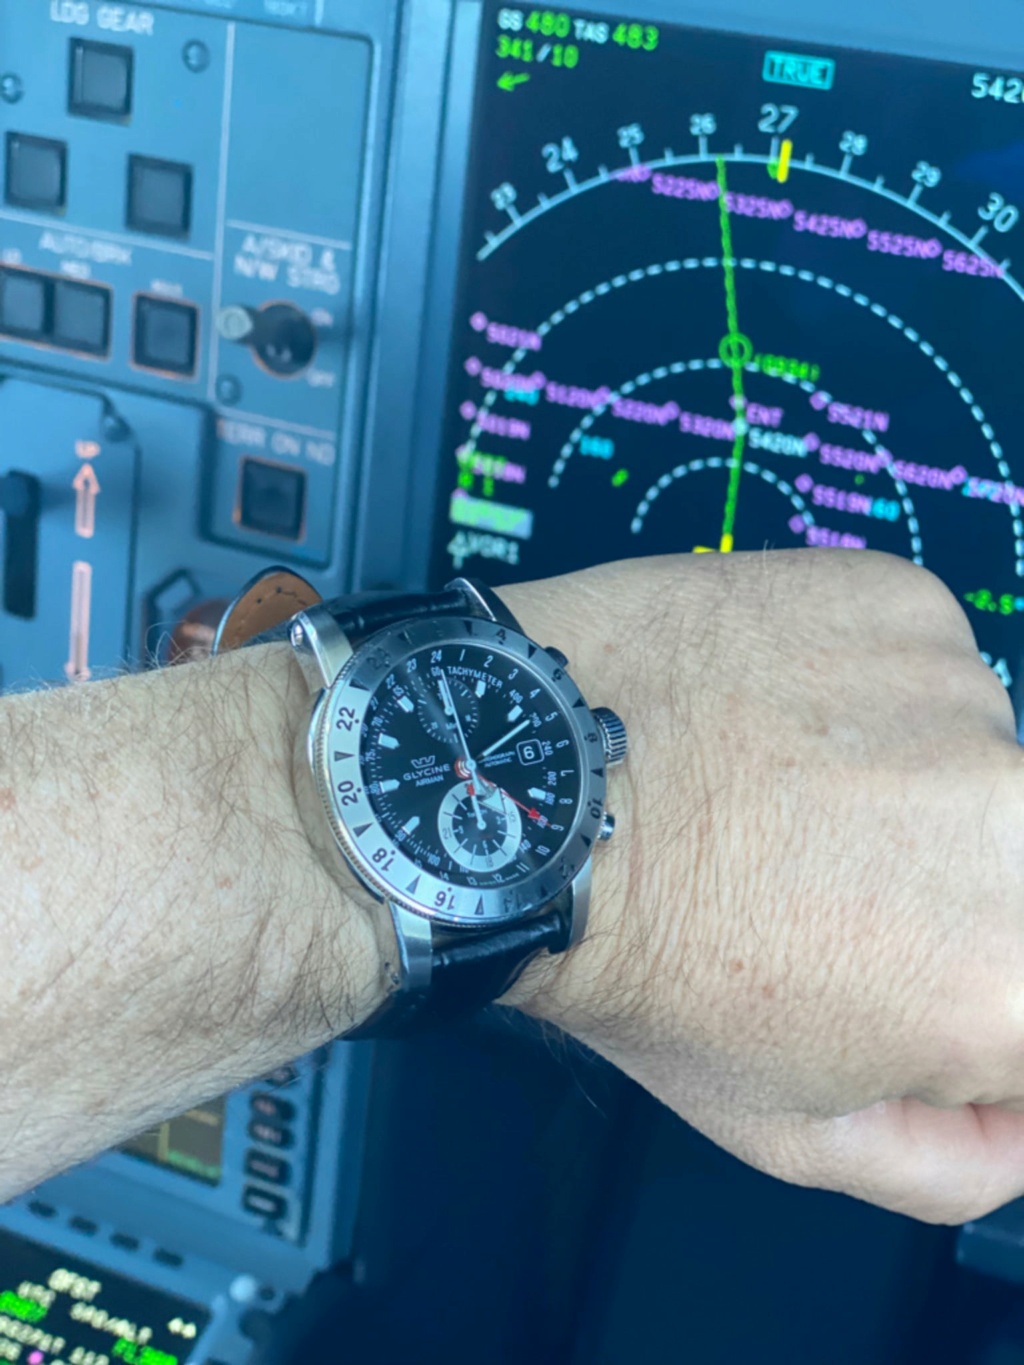 glashutte - Feu de vos montres d'aviateur, ou inspirées du monde aéronautique - Page 20 Glycin10